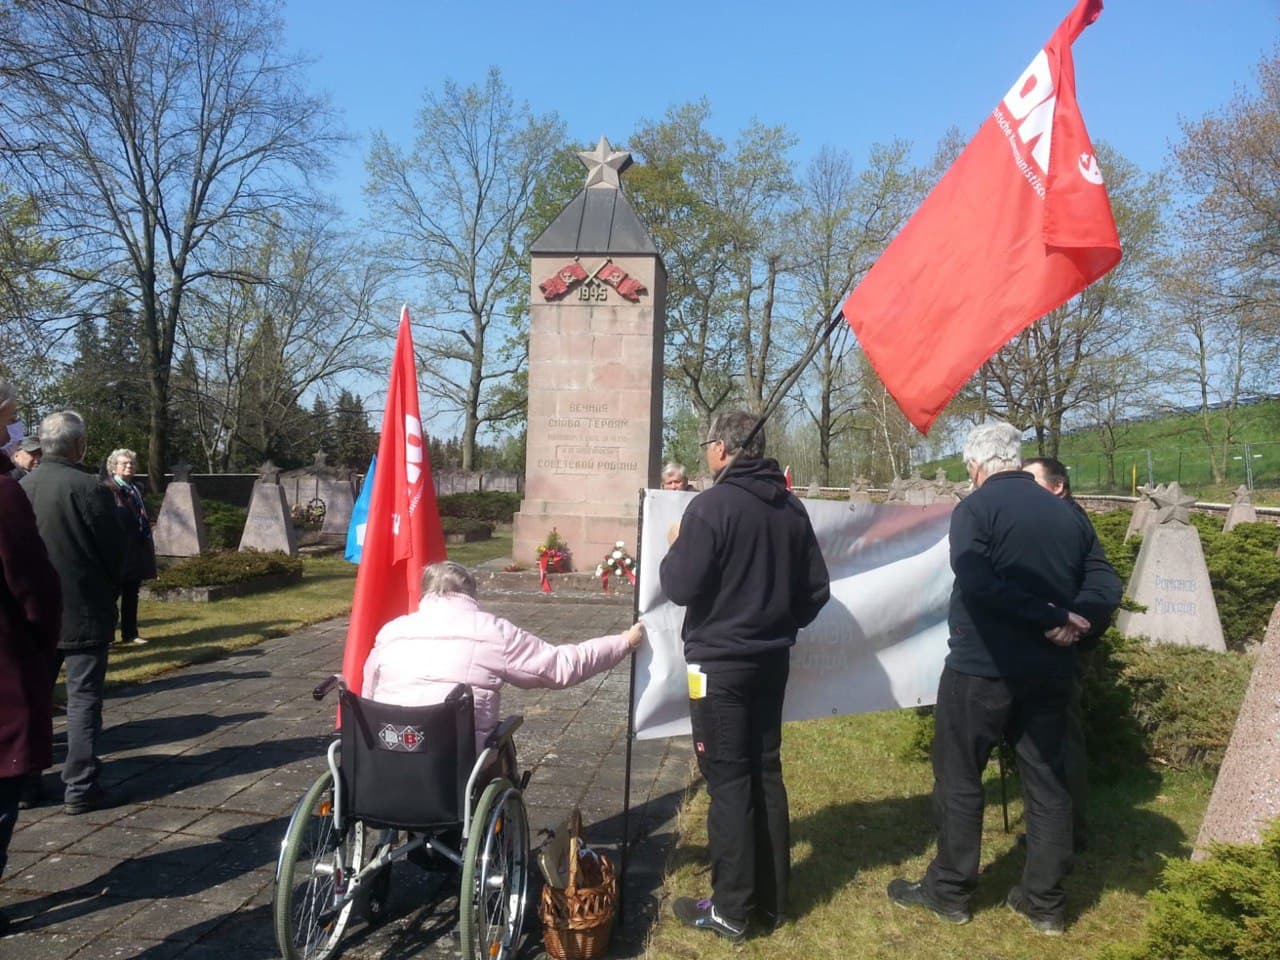 Elsterwerda - Wer nicht feiert, hat verloren - Antifaschismus, Friedenskampf, Geschichte der Arbeiterbewegung - Blog, DKP in Aktion